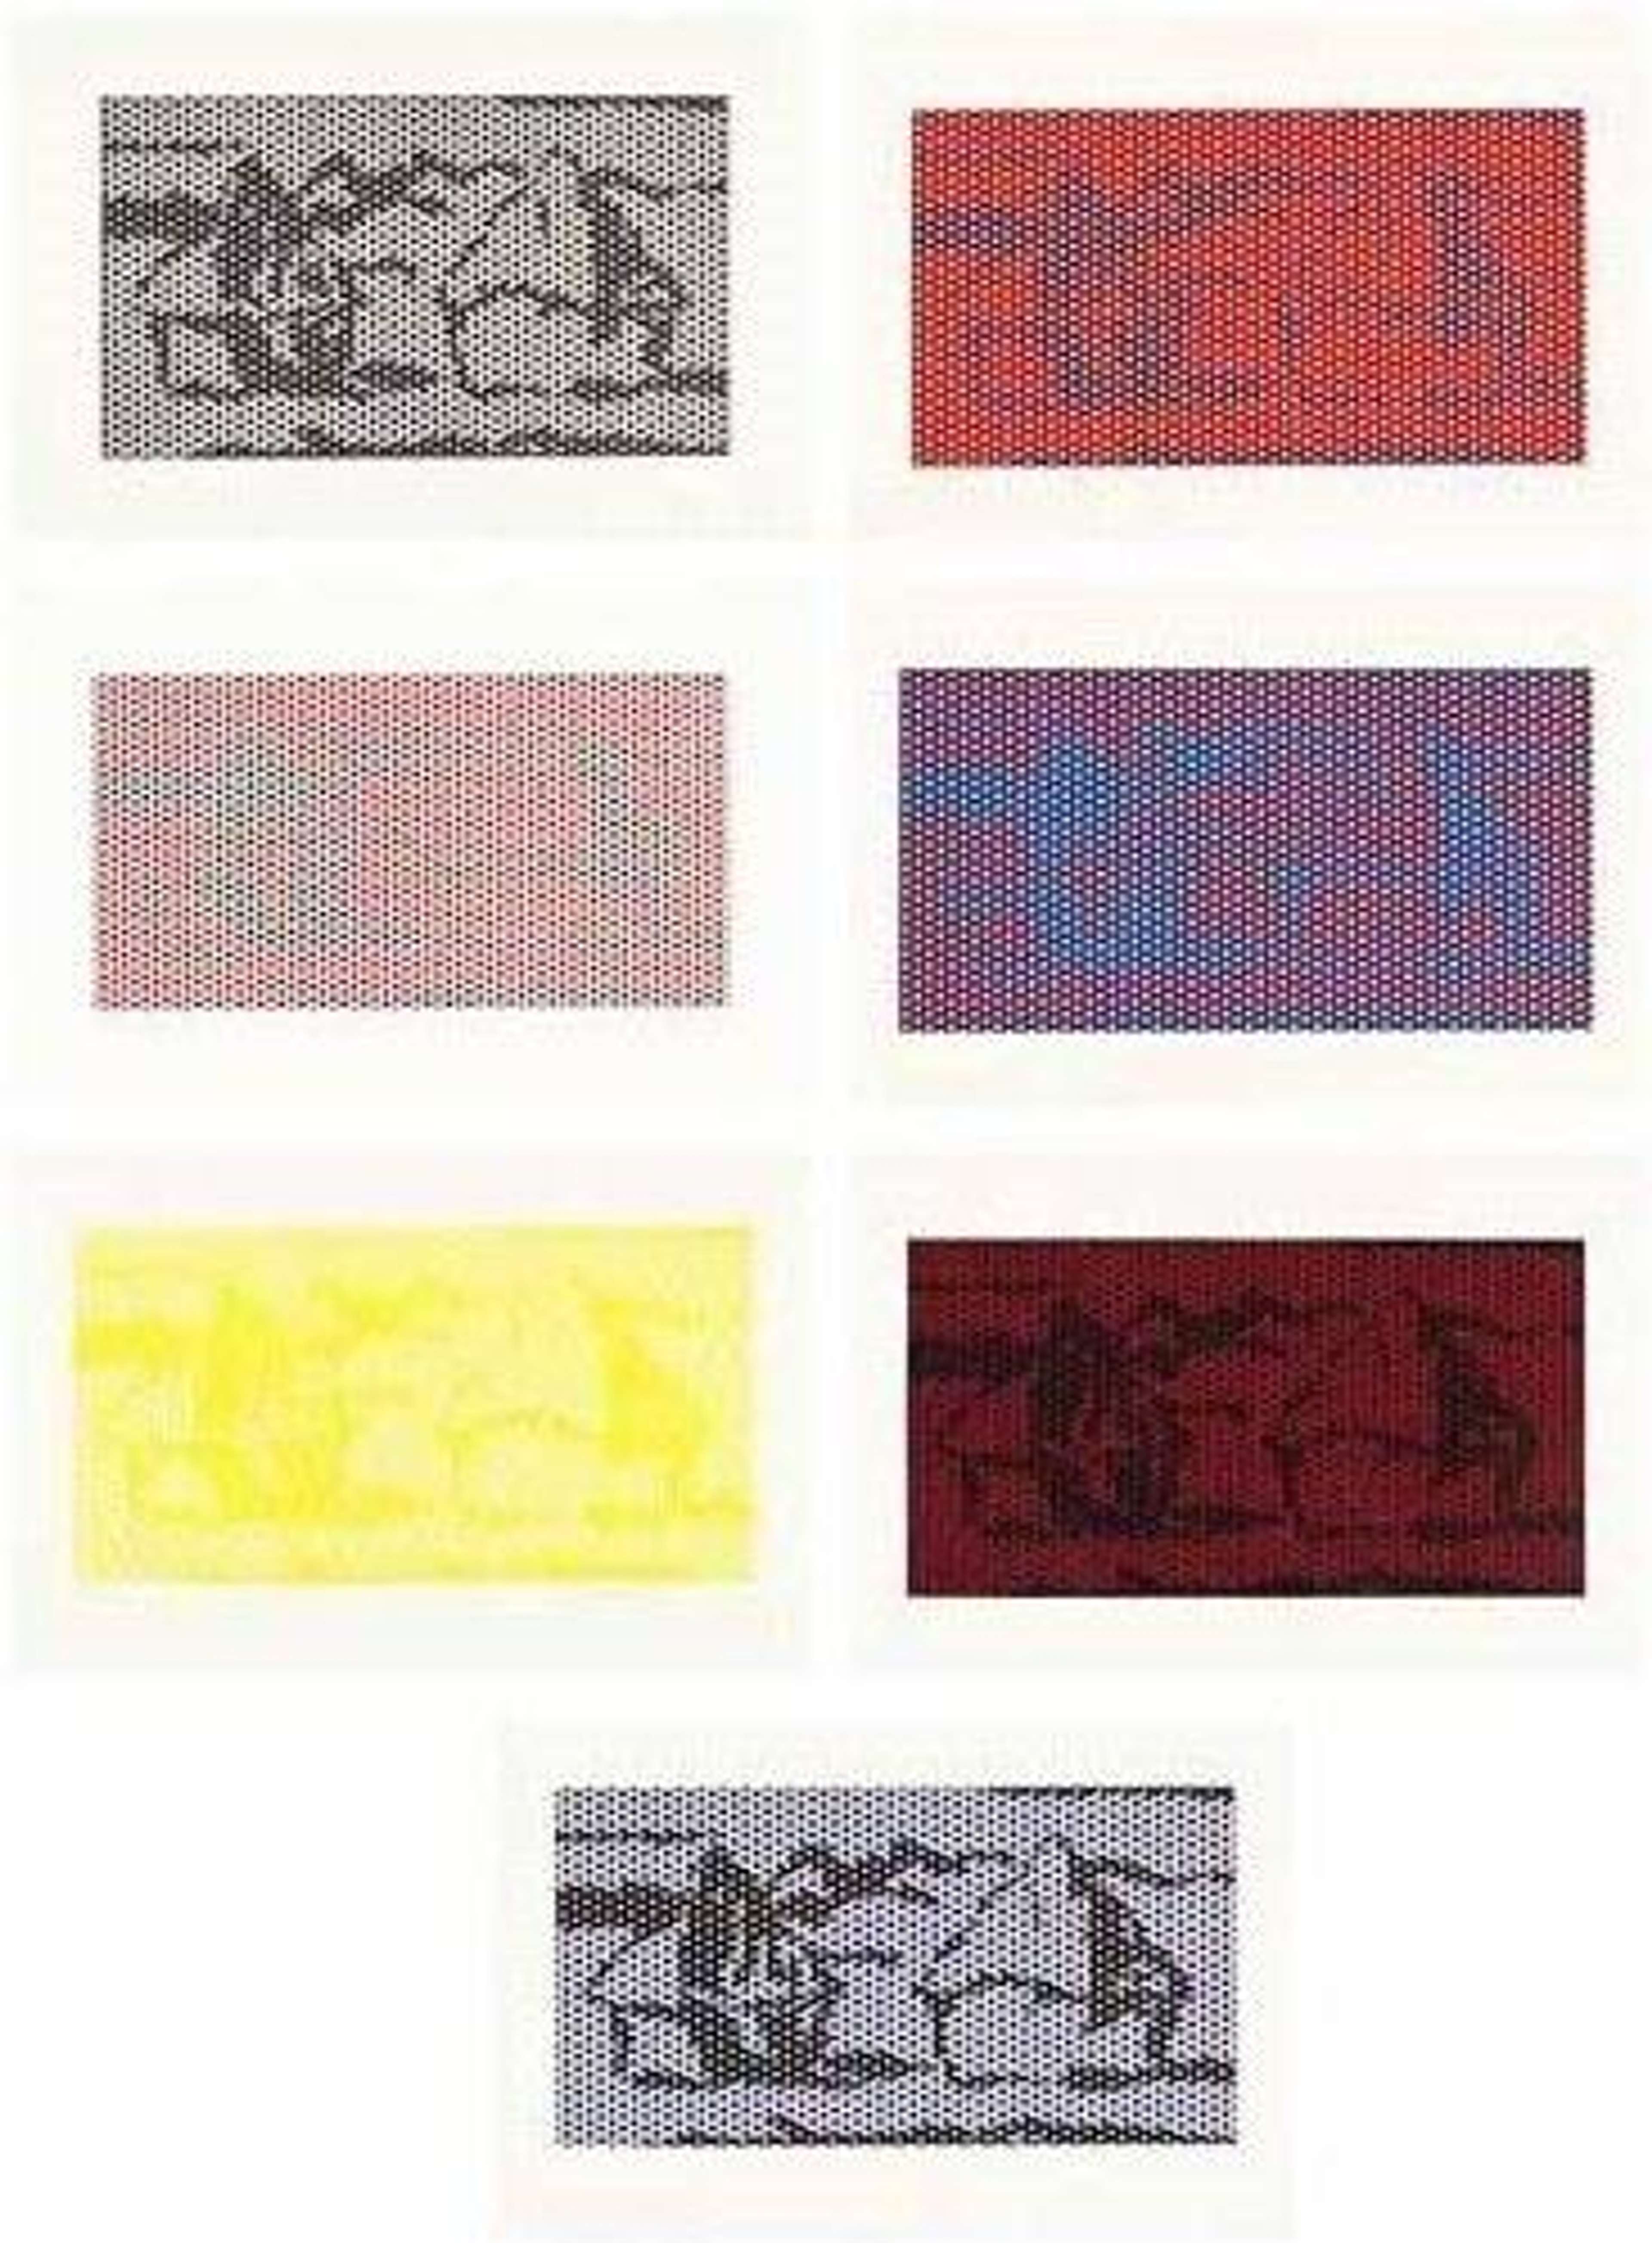 Haystacks Series by Roy Lichtenstein